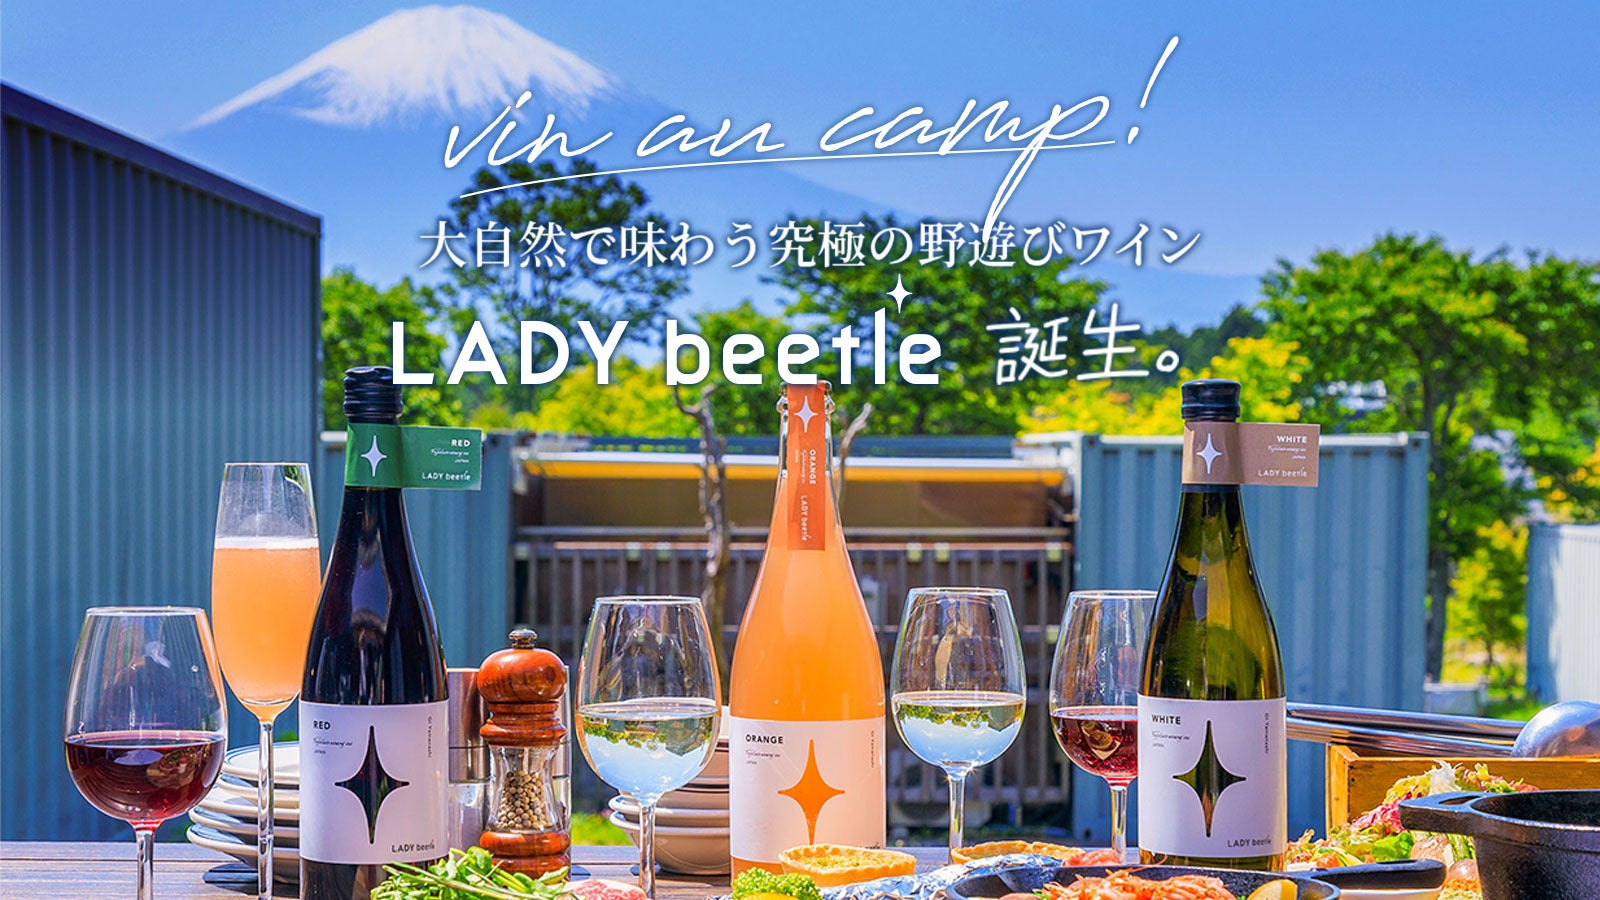 キャンプにはワインを！大自然で味わう究極の野遊びワイン「LADY beetle」がクラウドファンディングにて先行予約販売開始し、2日間で目標金額を達成！